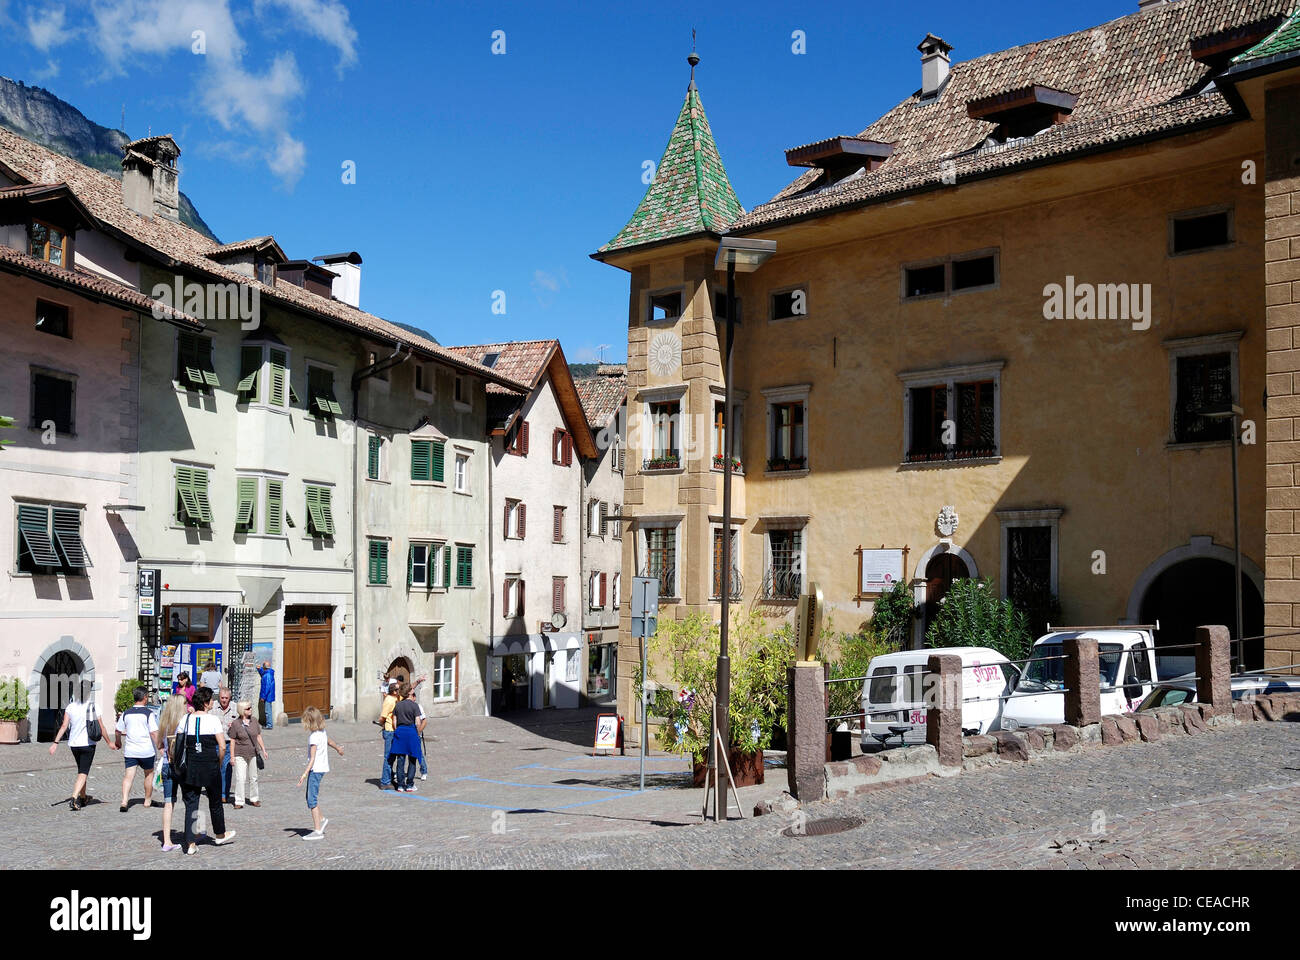 Centro de Kaltern en la ruta del vino de Tirol del Sur con casas del siglo XVII. Foto de stock